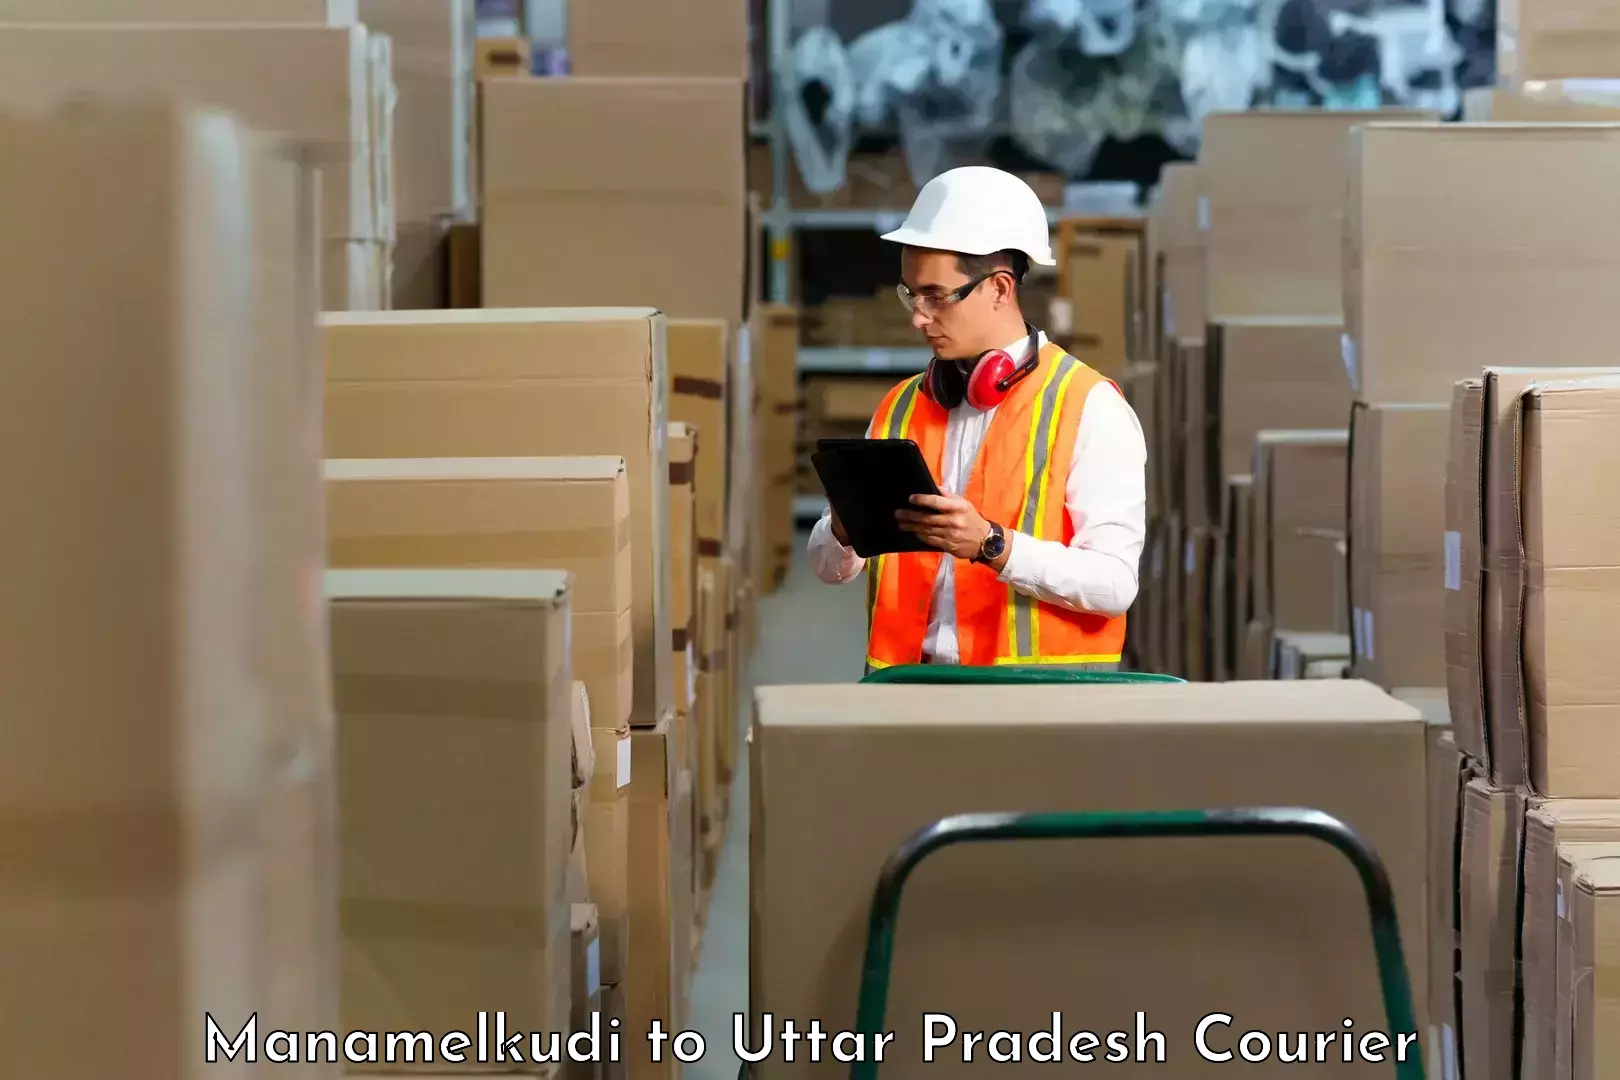 Quality courier partnerships Manamelkudi to Farrukhabad